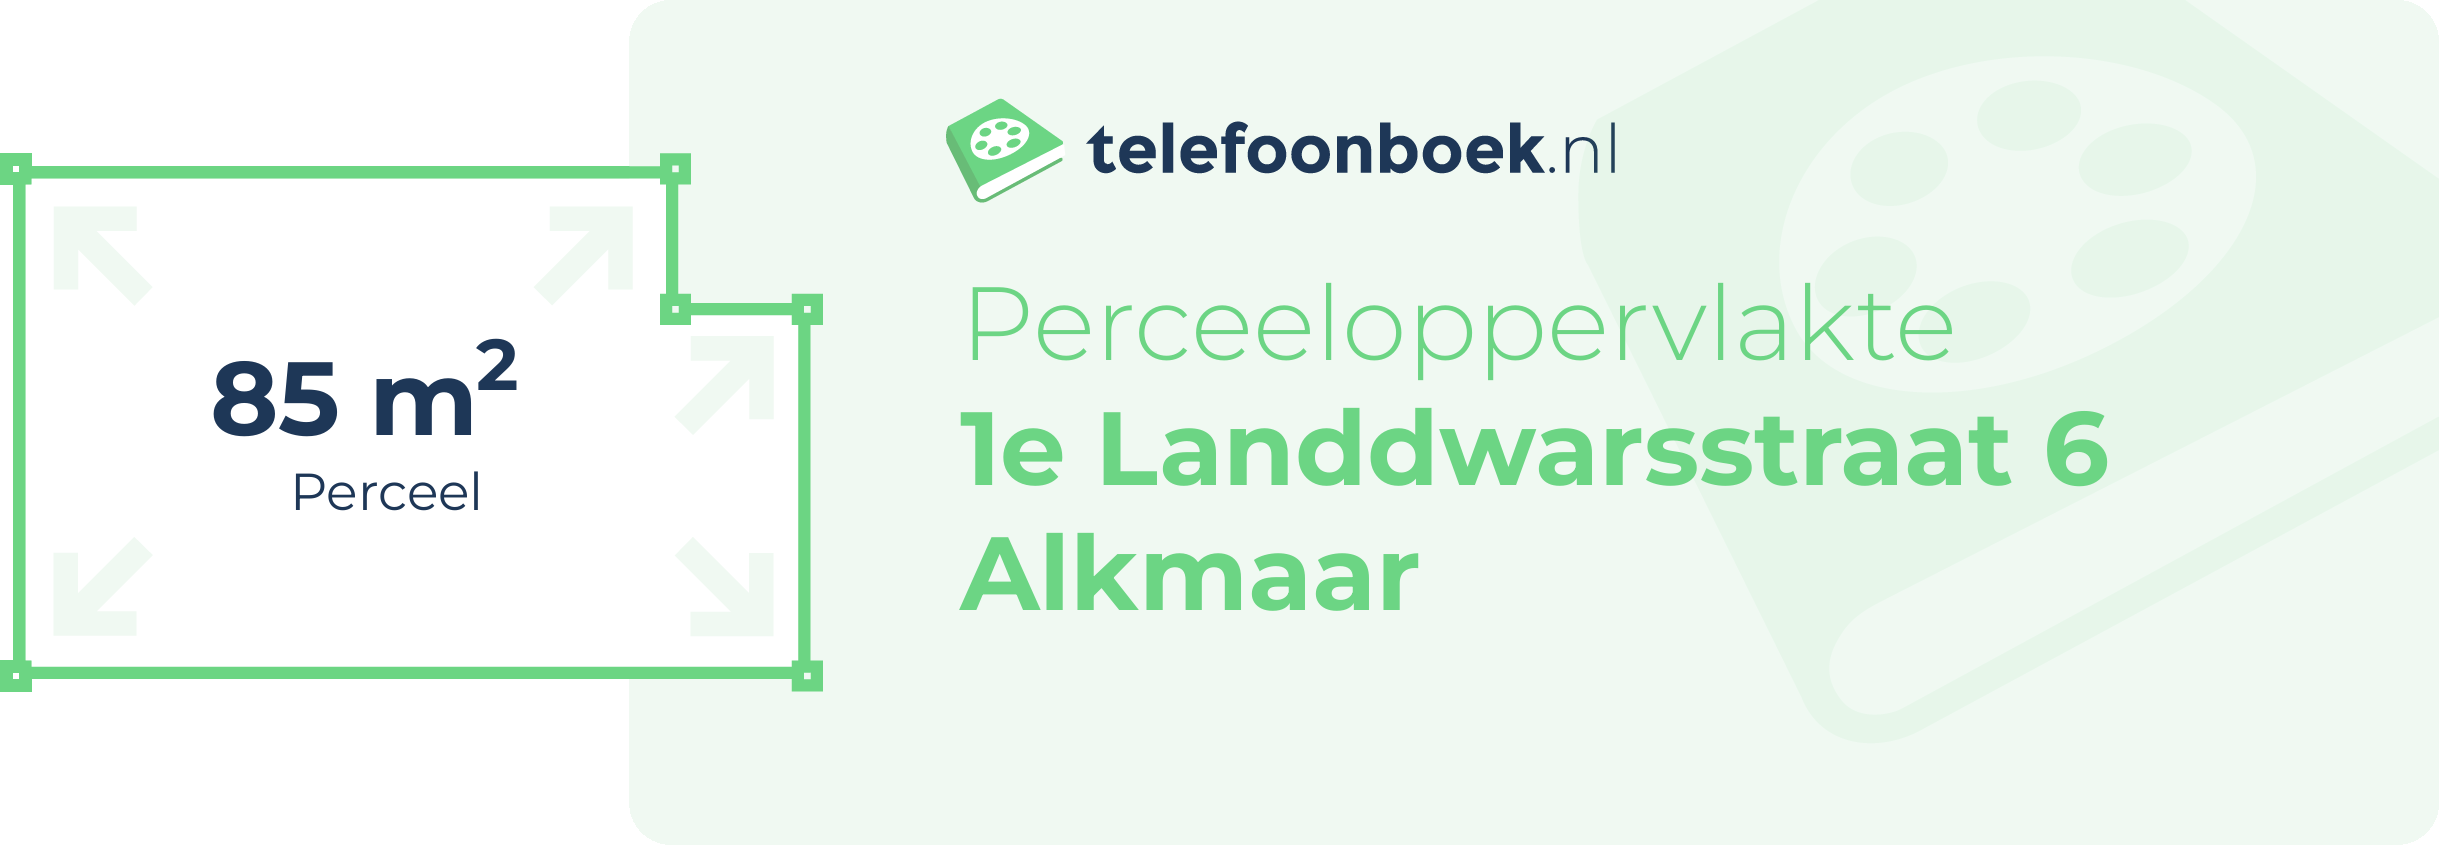 Perceeloppervlakte 1e Landdwarsstraat 6 Alkmaar